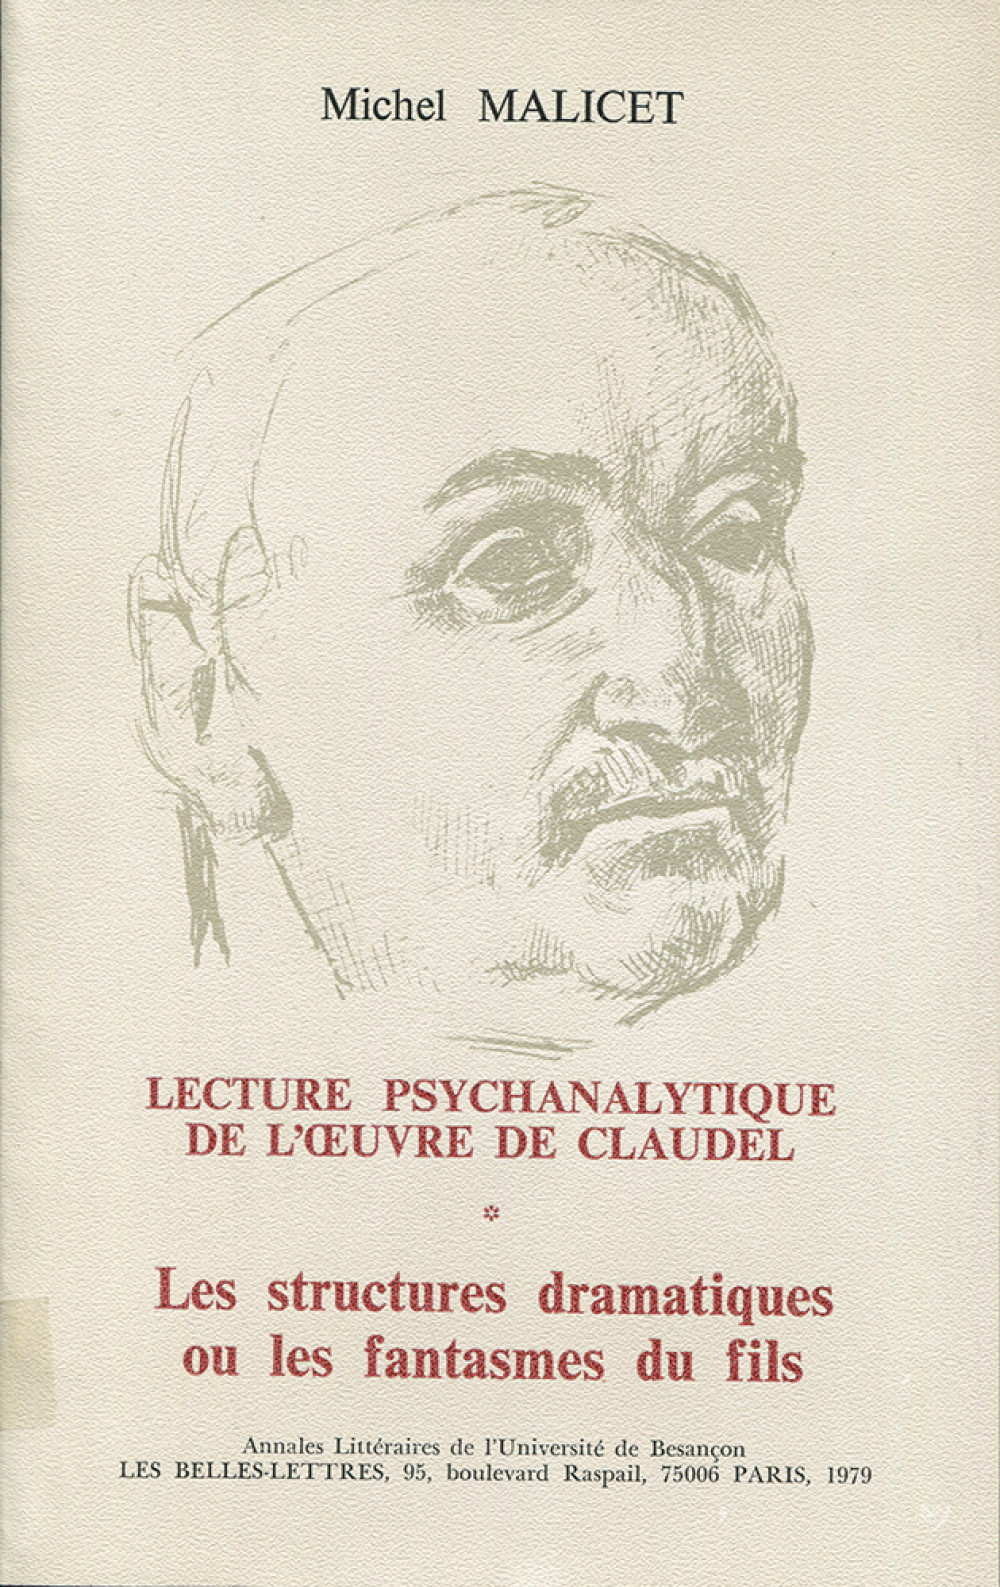 Lecture psychanalytique de l'oeuvre de Paul Claudel I